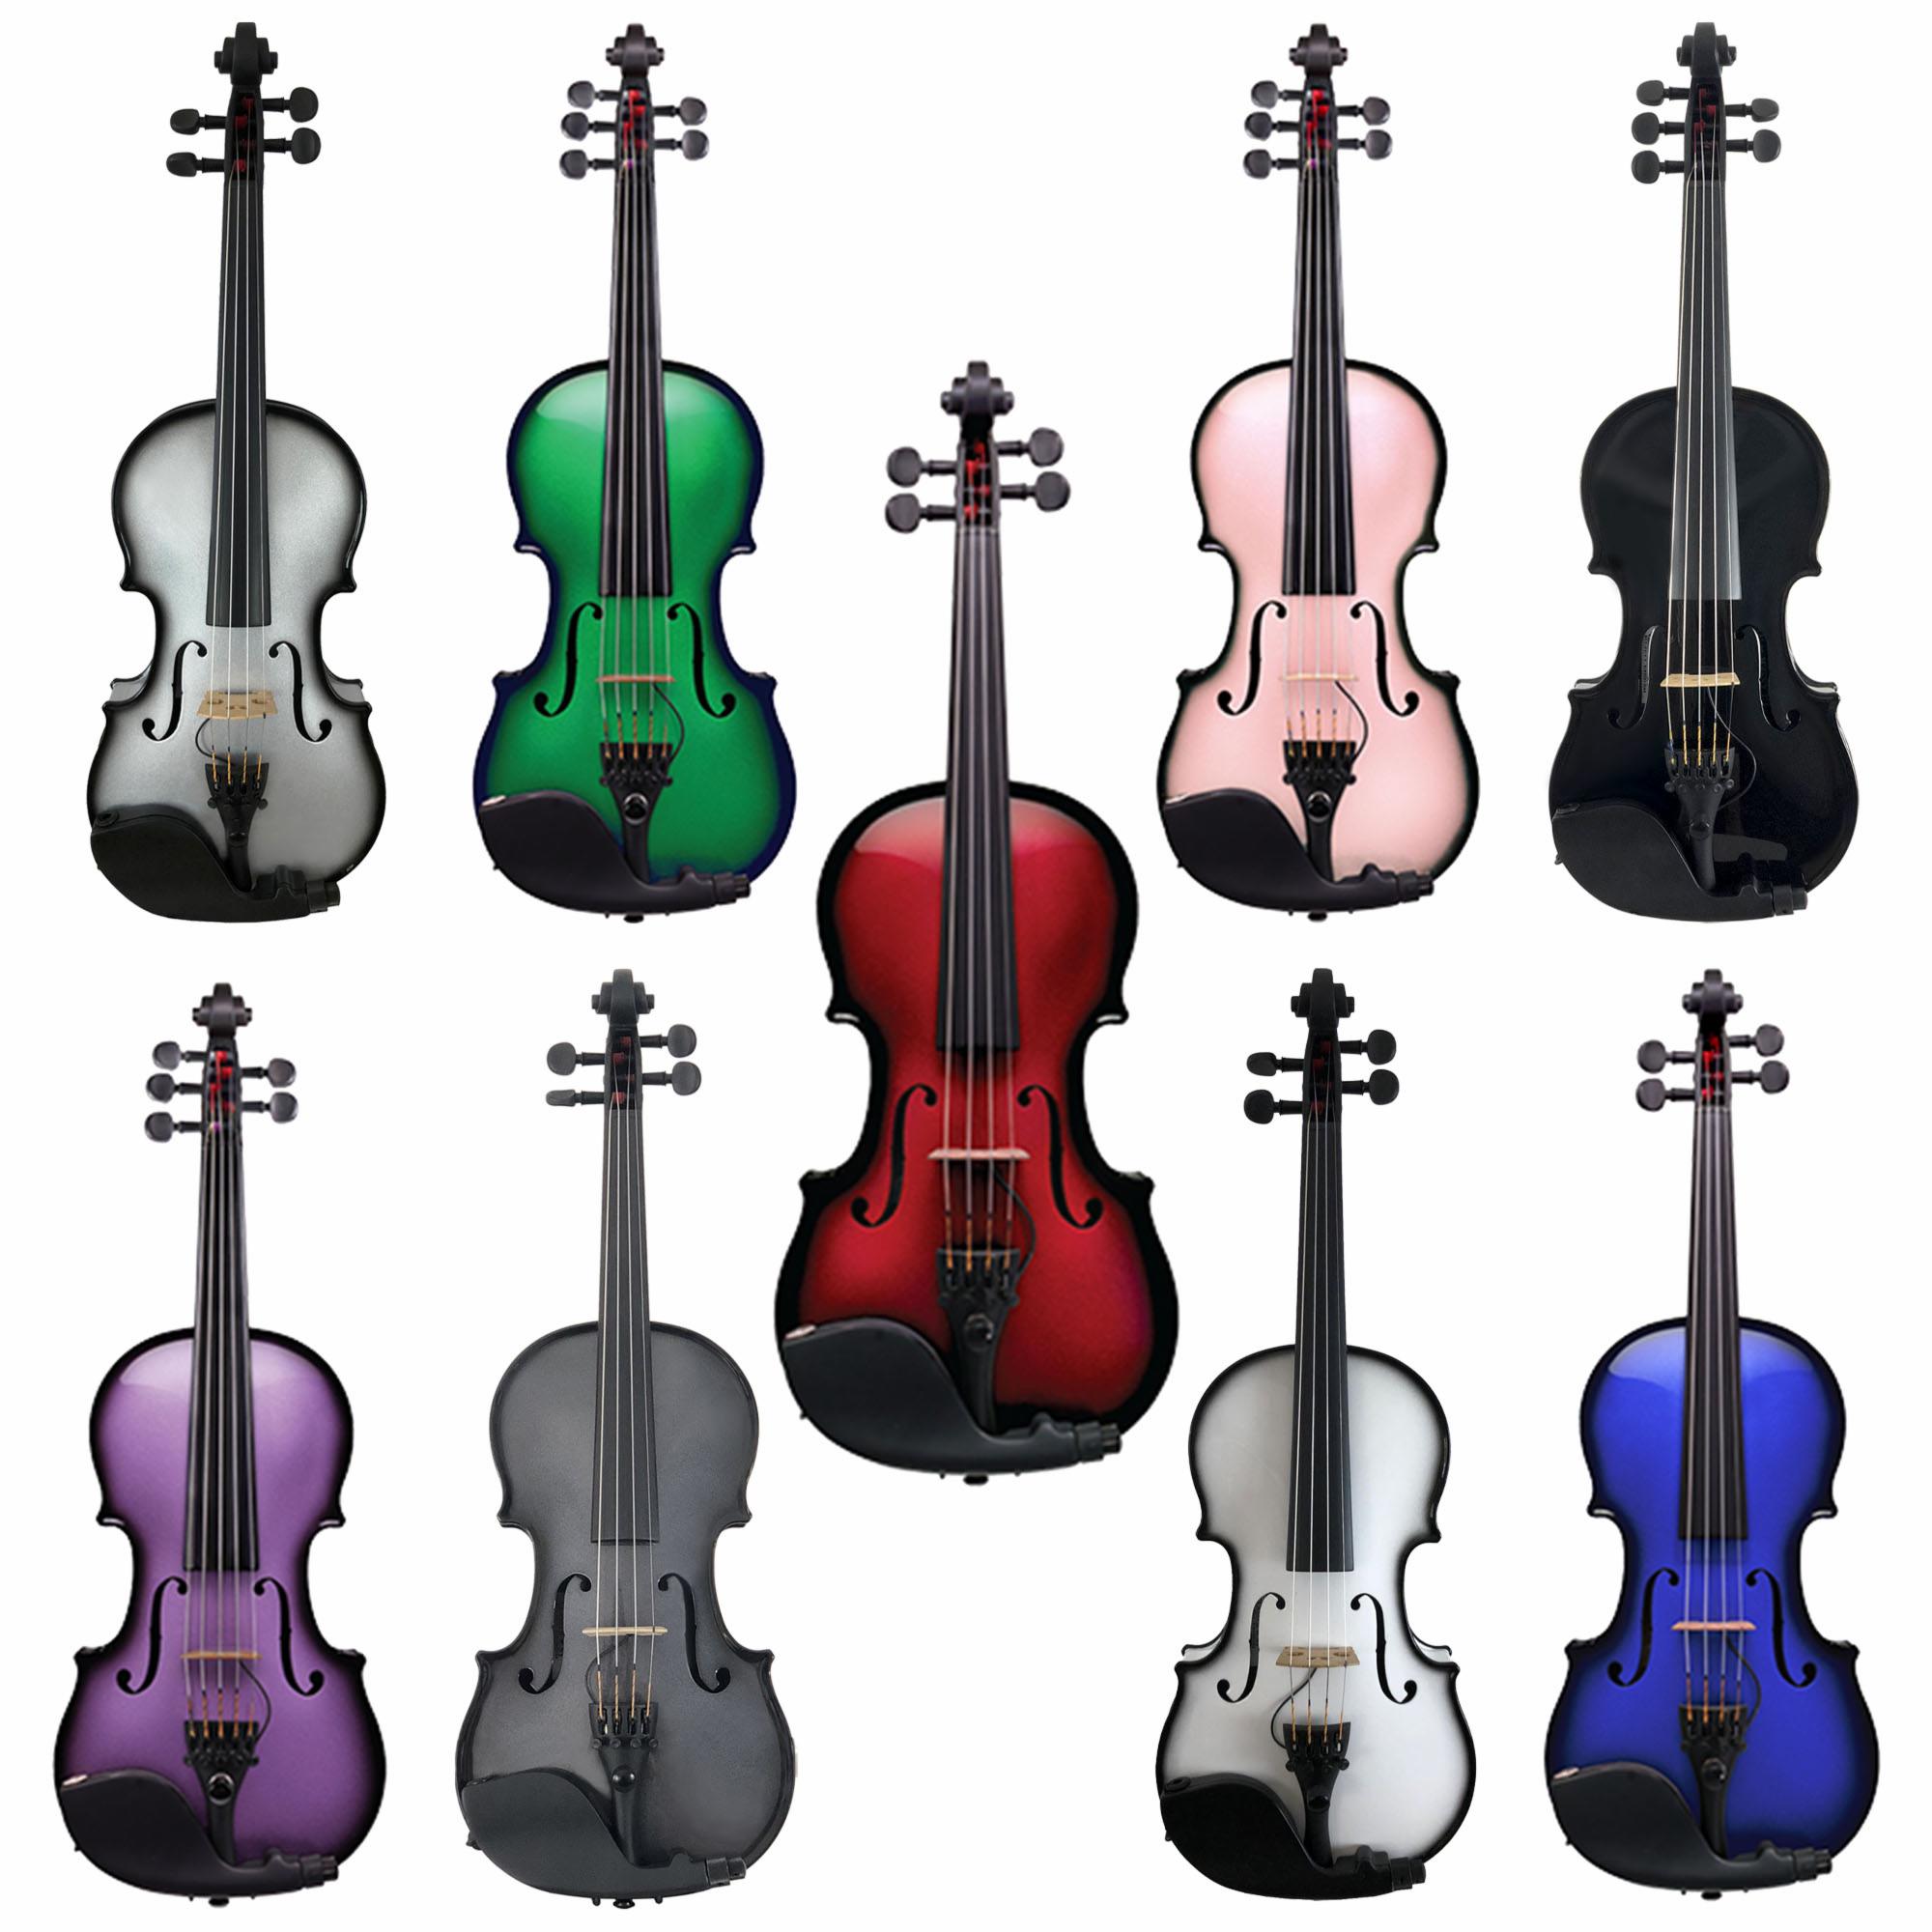 Glasser Carbon Composite AEX Acoustic/Electric Violin - Colors